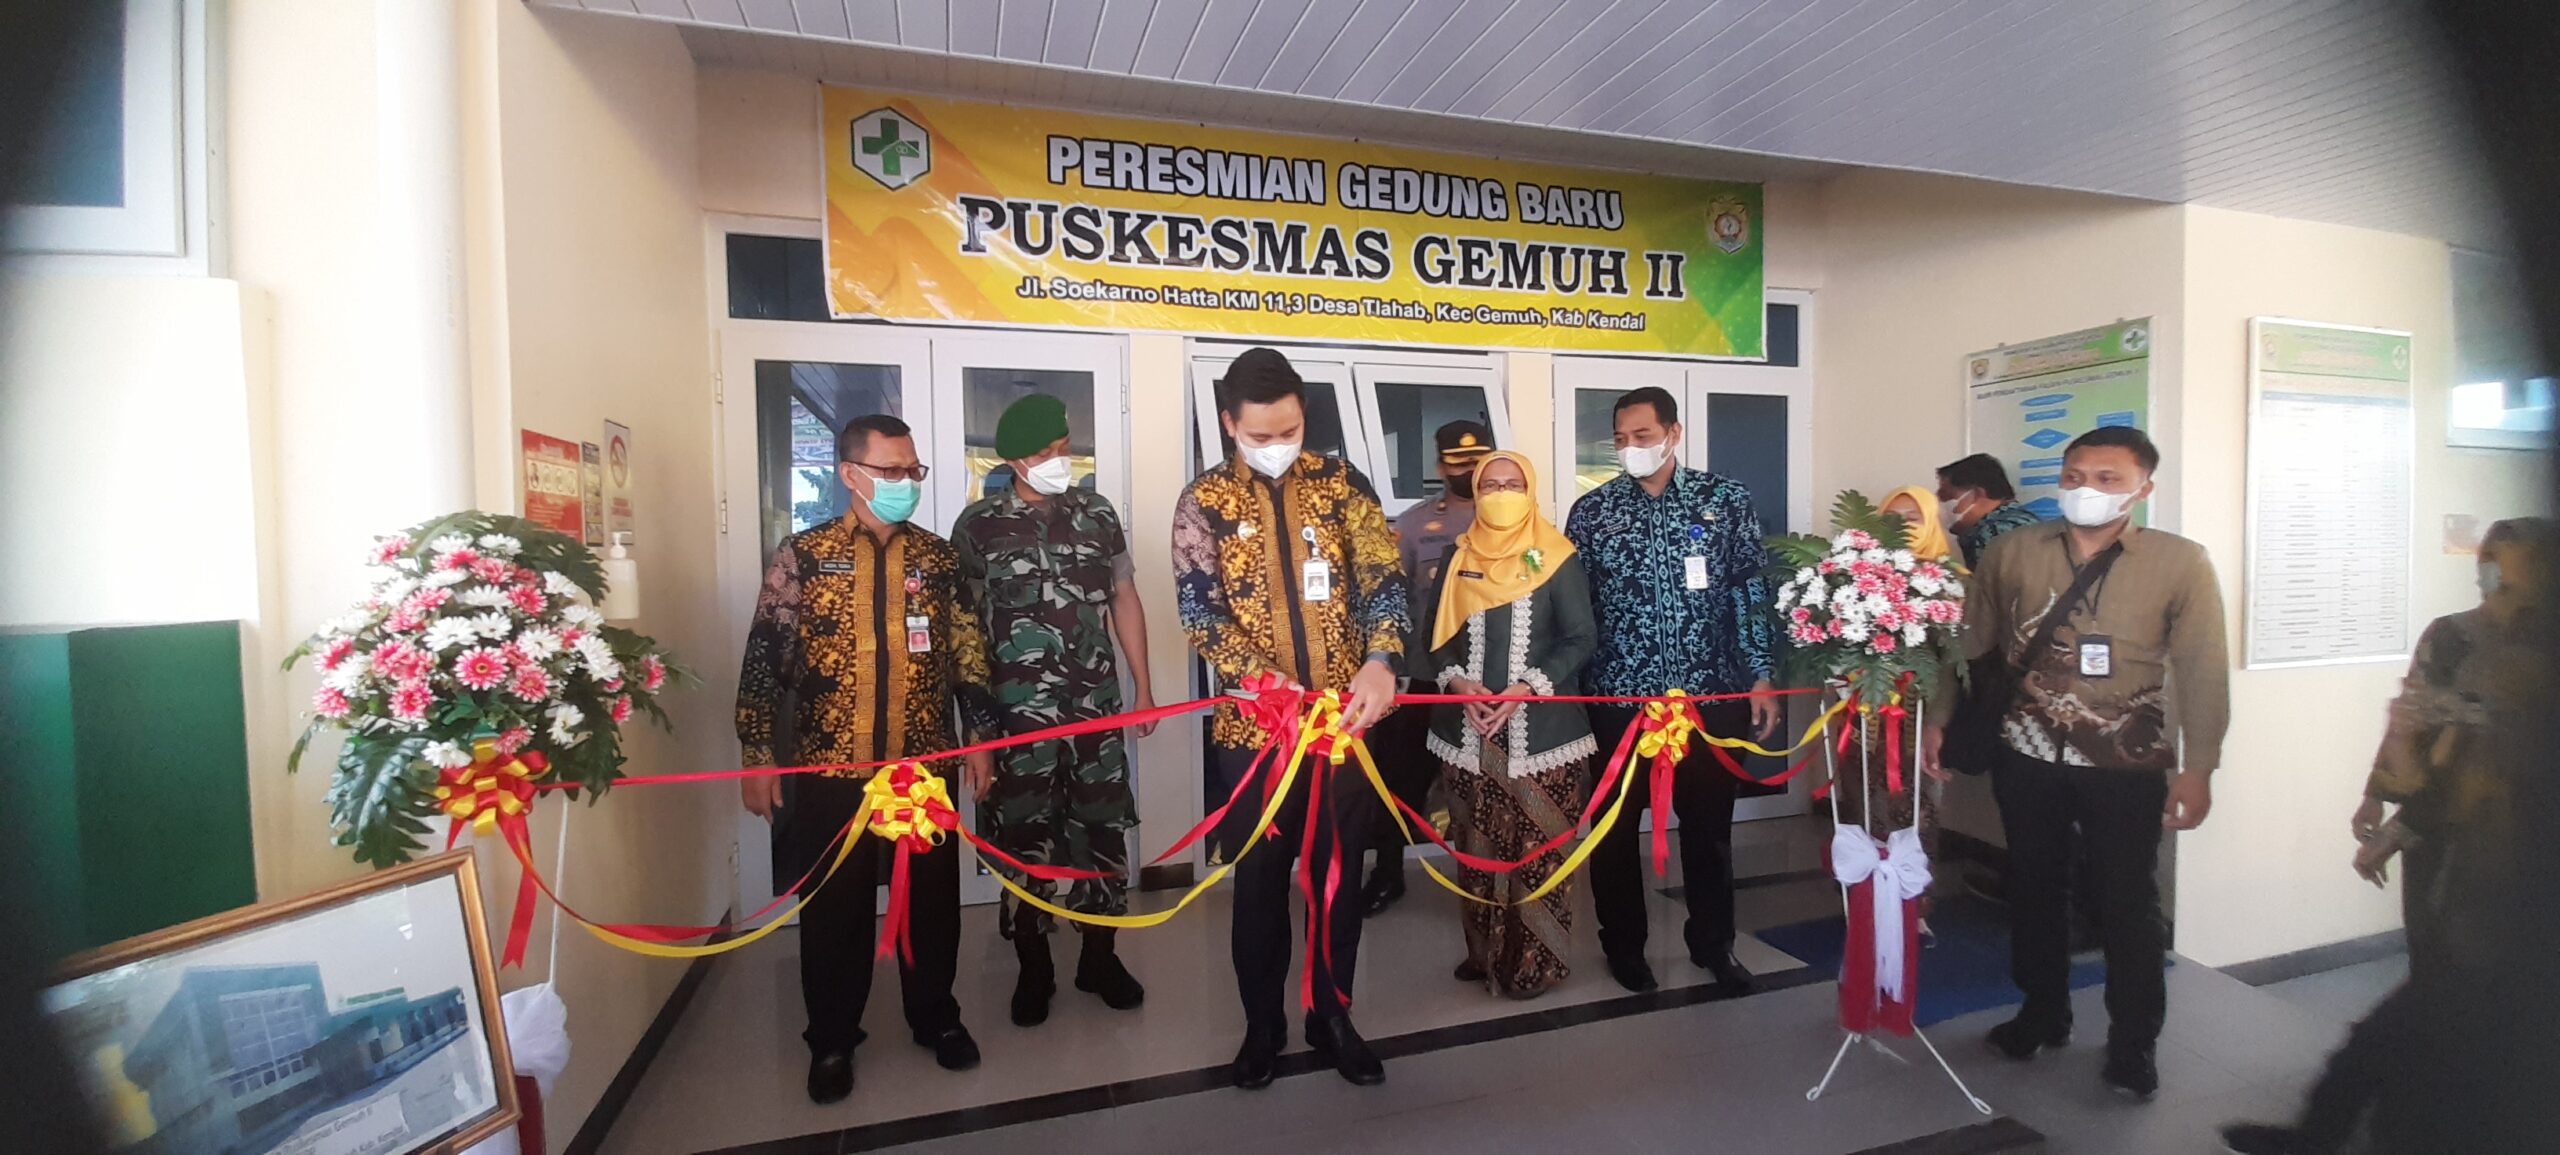 Resmikan Gedung Puskesmas II, Bupati Kendal : Mempermudah Akses Pelayanan  Kesehatan Masyarakat – Halo Semarang